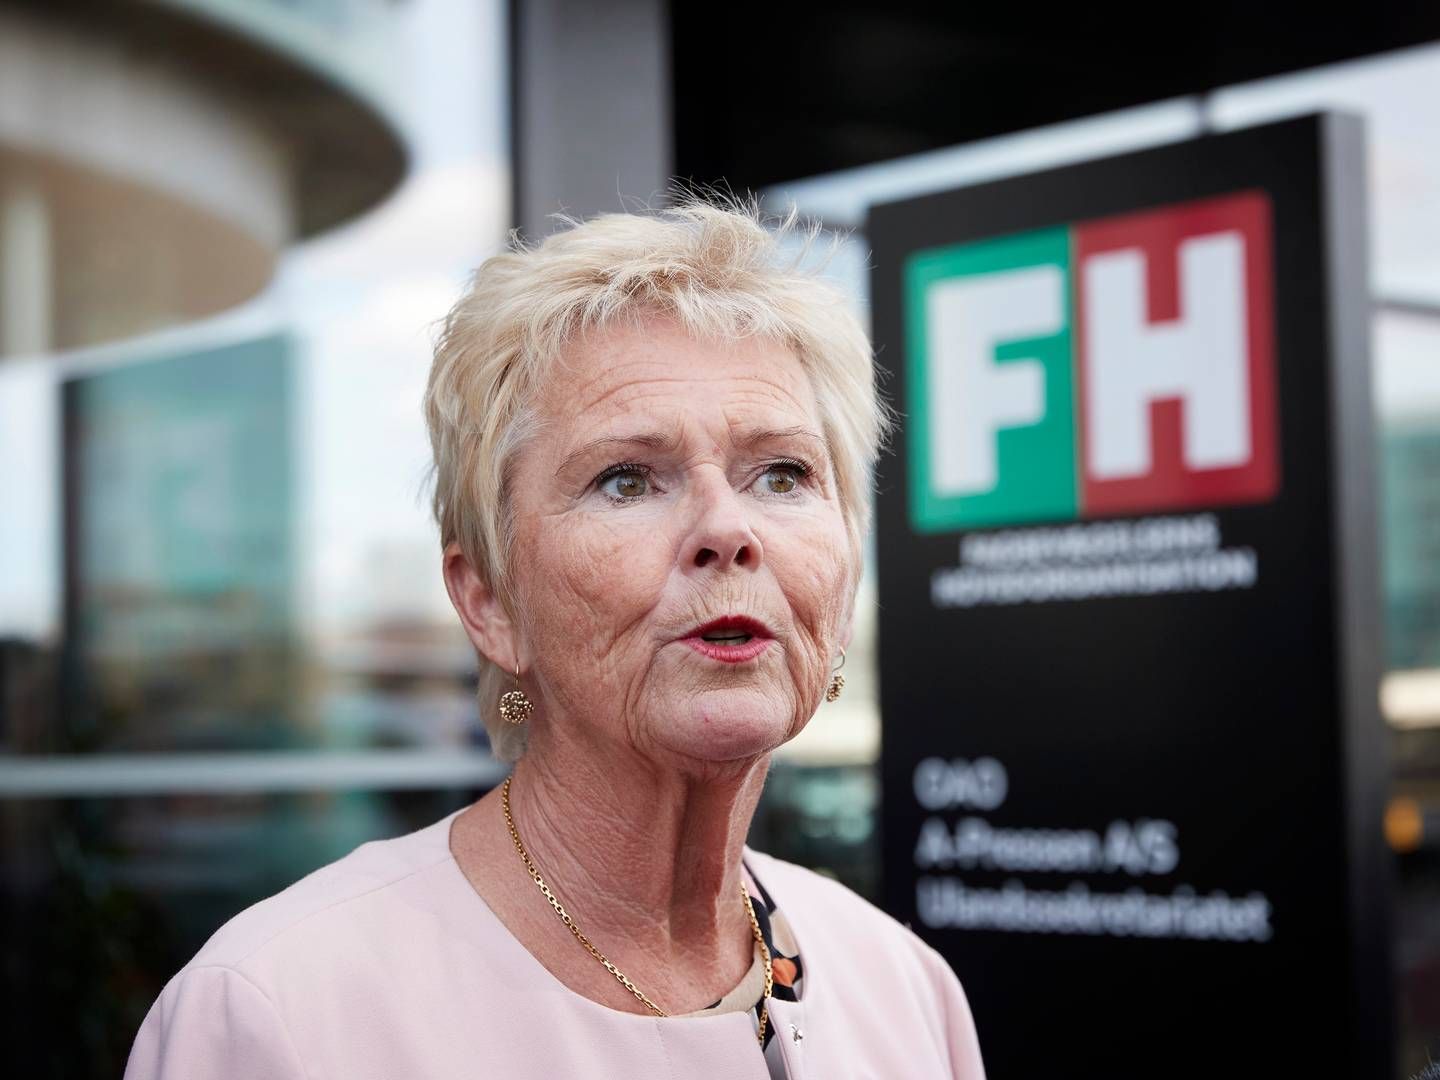 Tidligere formand for Fagbægelsens Hovedorganisation Lizette Risgaard gik af tidligere på året efter anklager om grænseoverskridende adfærd. | Foto: Jens Dresling